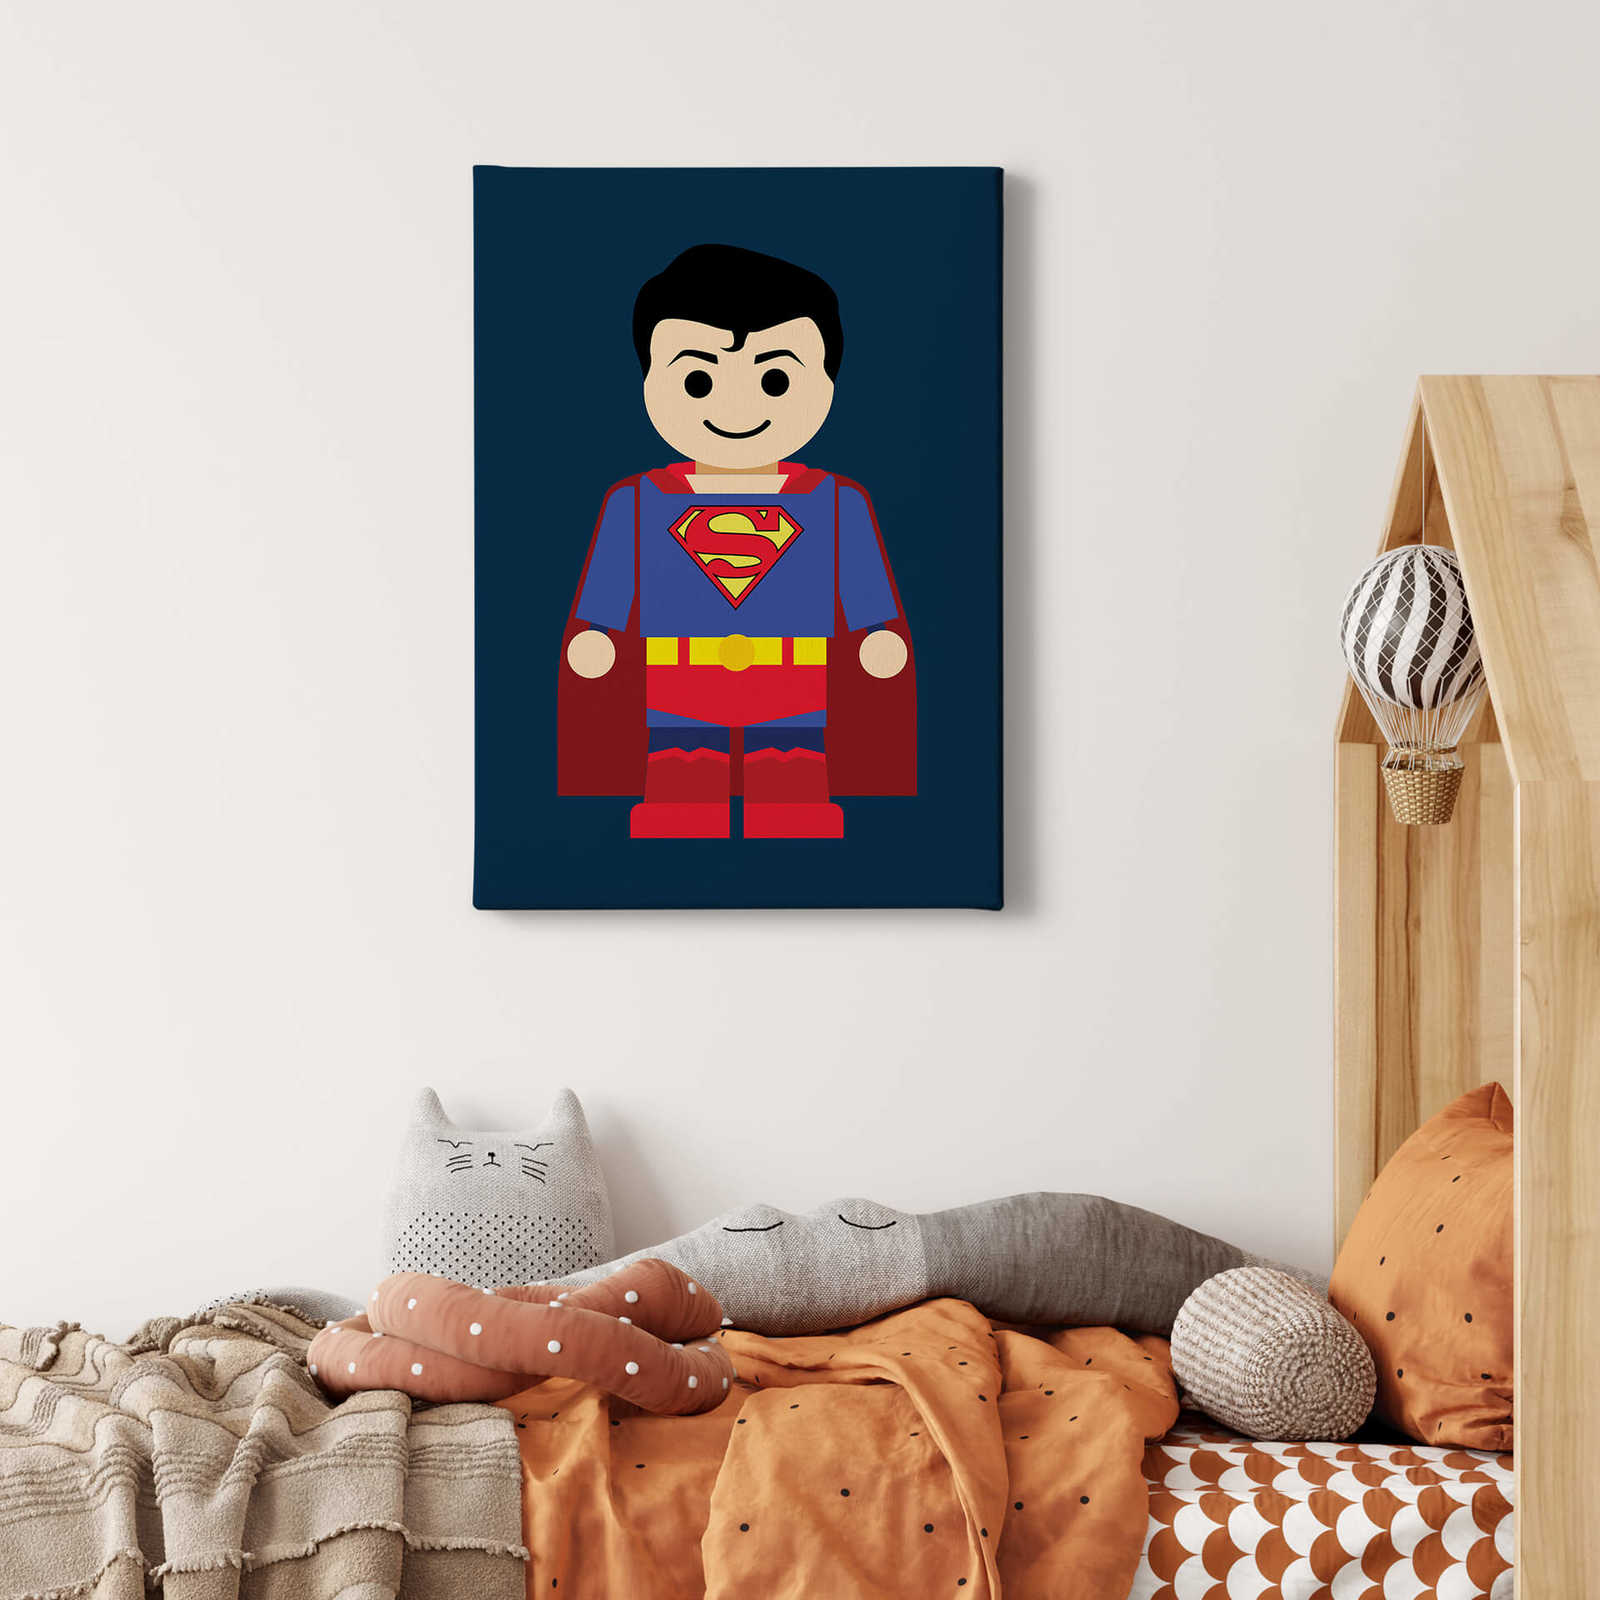             Toile enfant Superman de Gomes - 0,50 m x 0,70 m
        